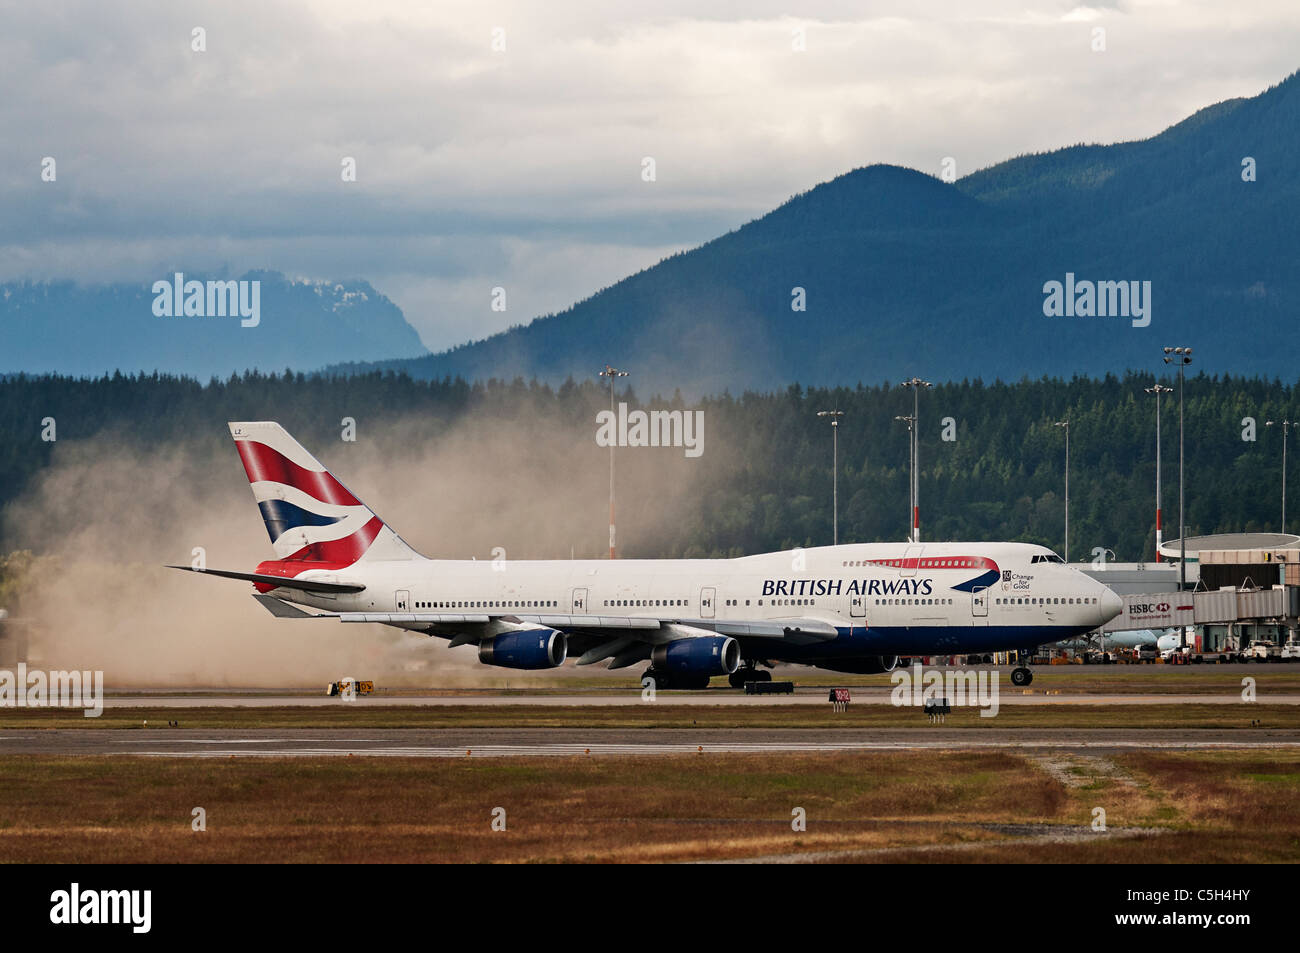 La poussée des moteurs à réaction d'un Boeing 747 de British Airways lance une petite tempête de poussière qu'il circule le long de la piste. Banque D'Images